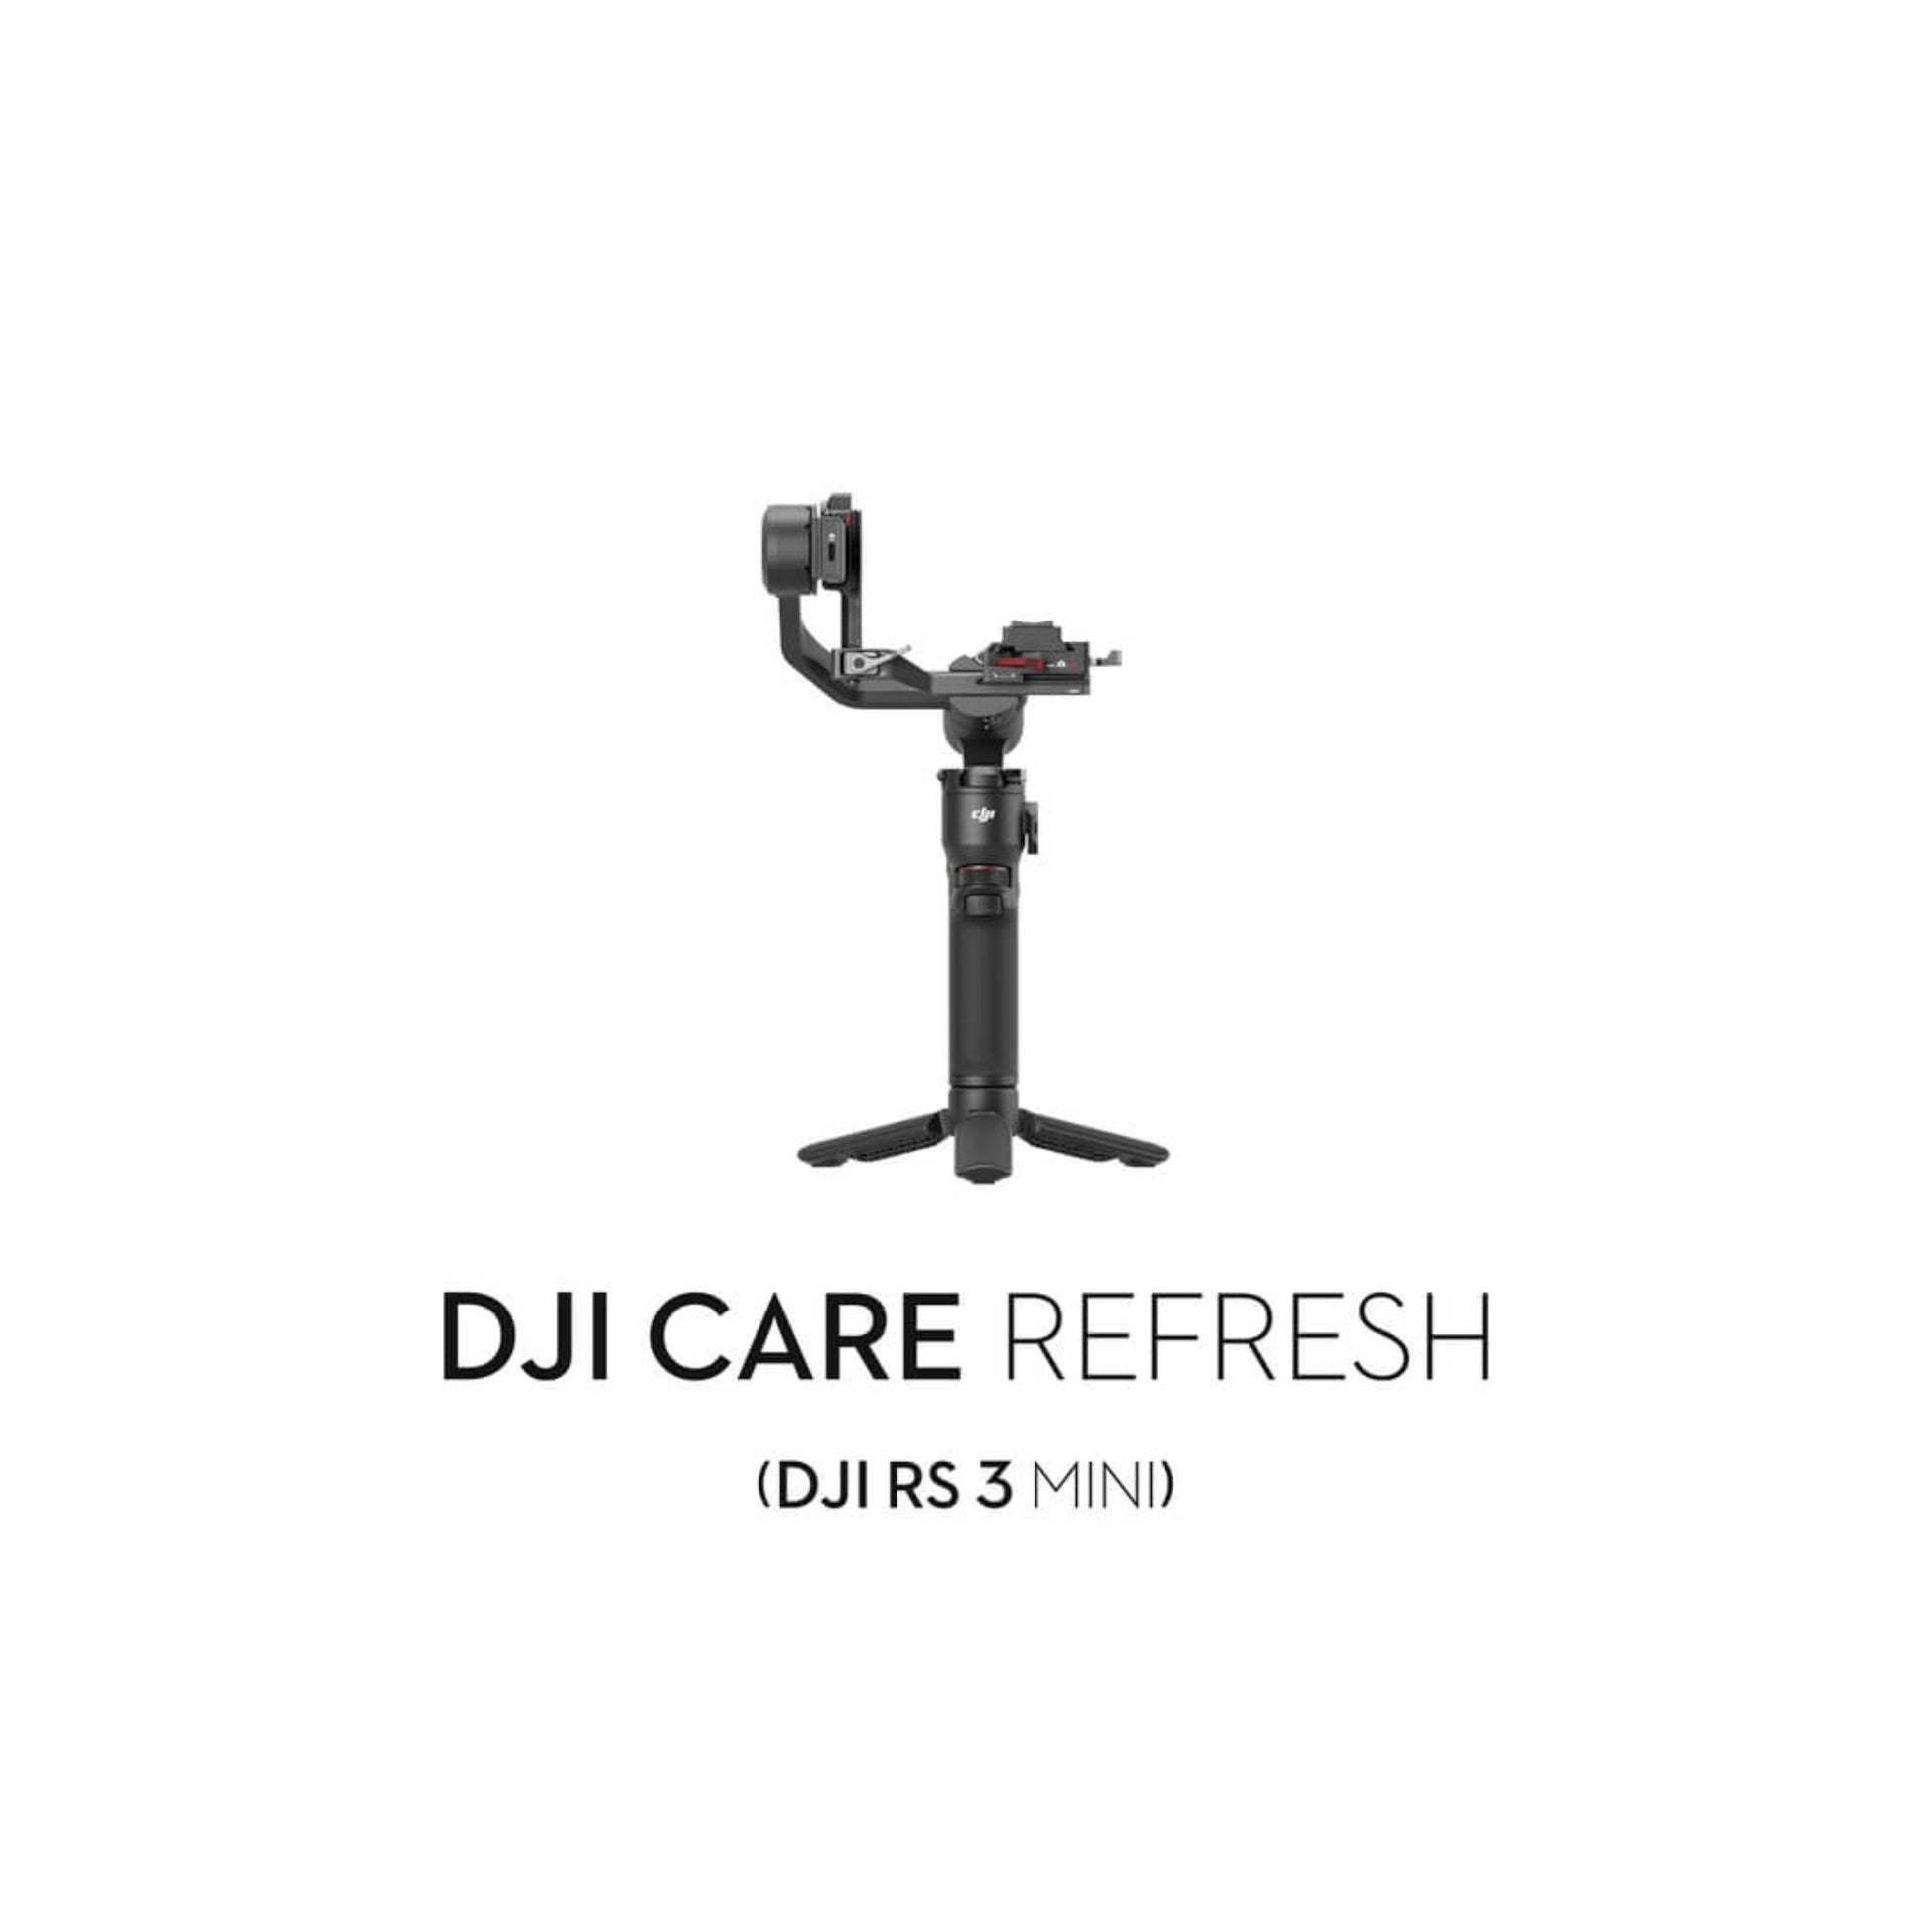 DJI Care Refresh 1-Year Plan (DJI RS 3 Mini) - Silverlight Optics